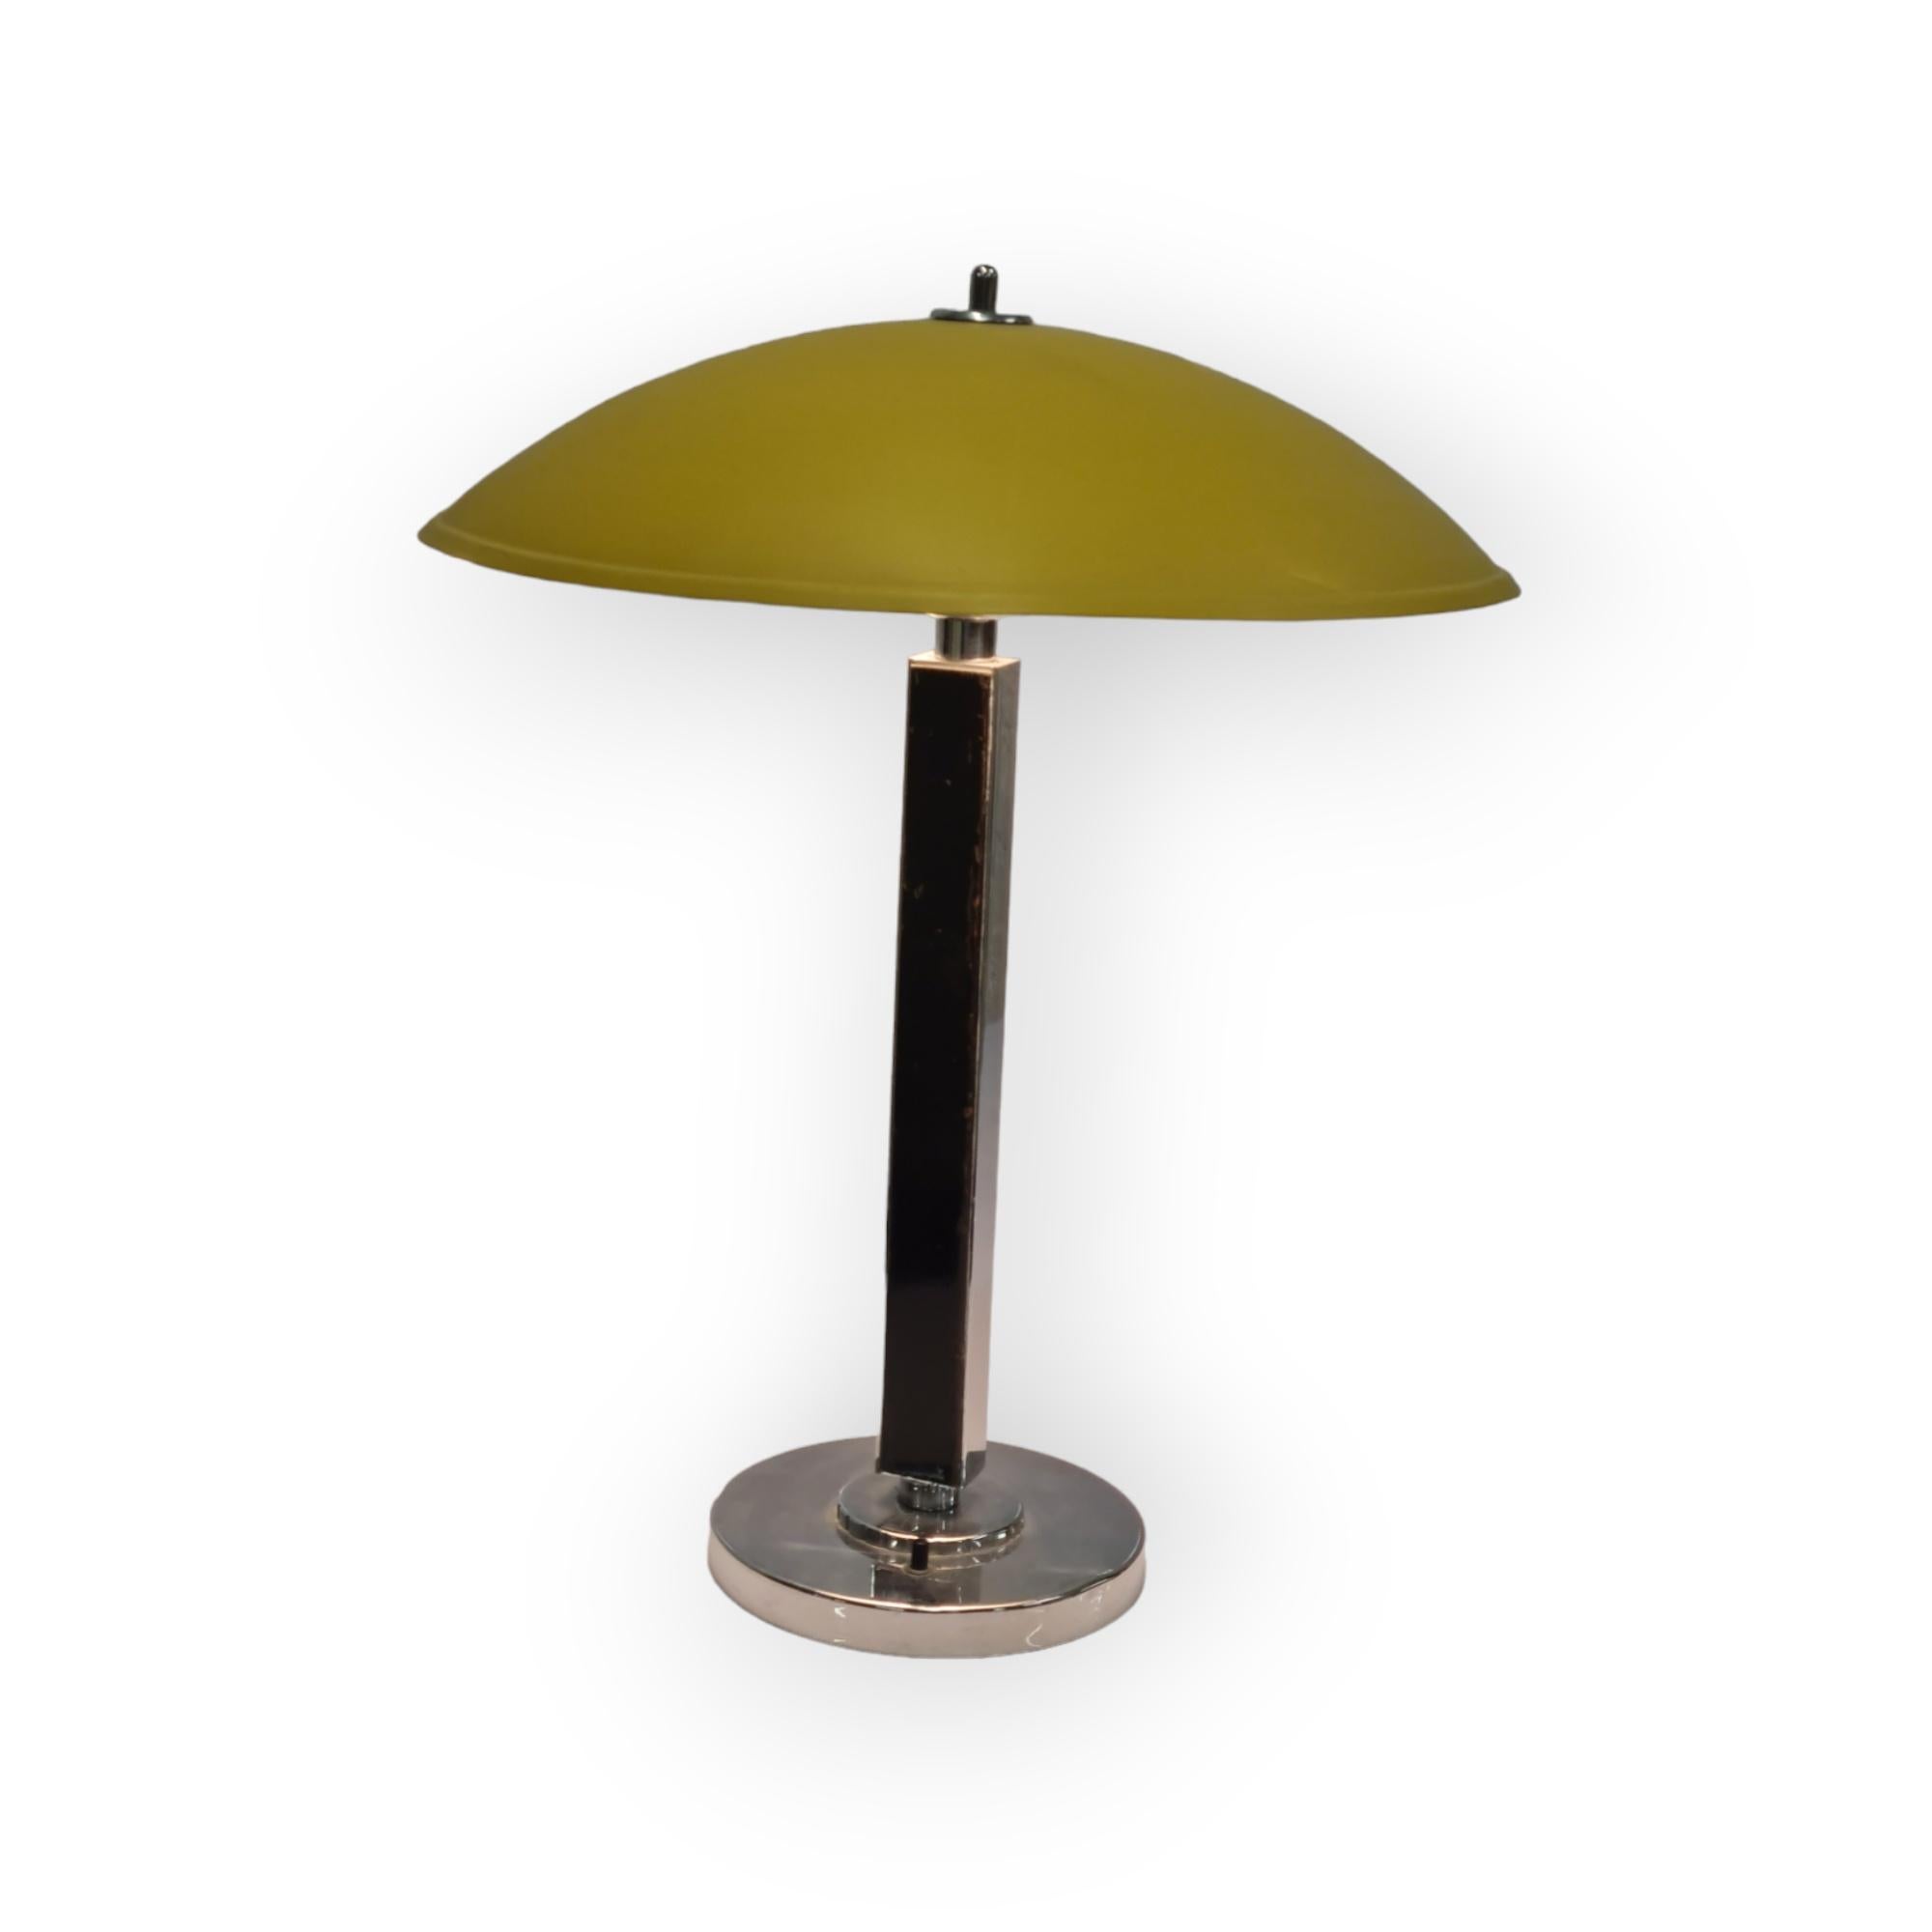 Il s'agit d'une version extrêmement rare de la lampe de table Gunilla Jung conçue en 1936-37 pour Orno et exposée à l'exposition universelle de Paris en 1937.

Ce bel exemplaire est considéré comme une version unique de cette lampe en raison de la